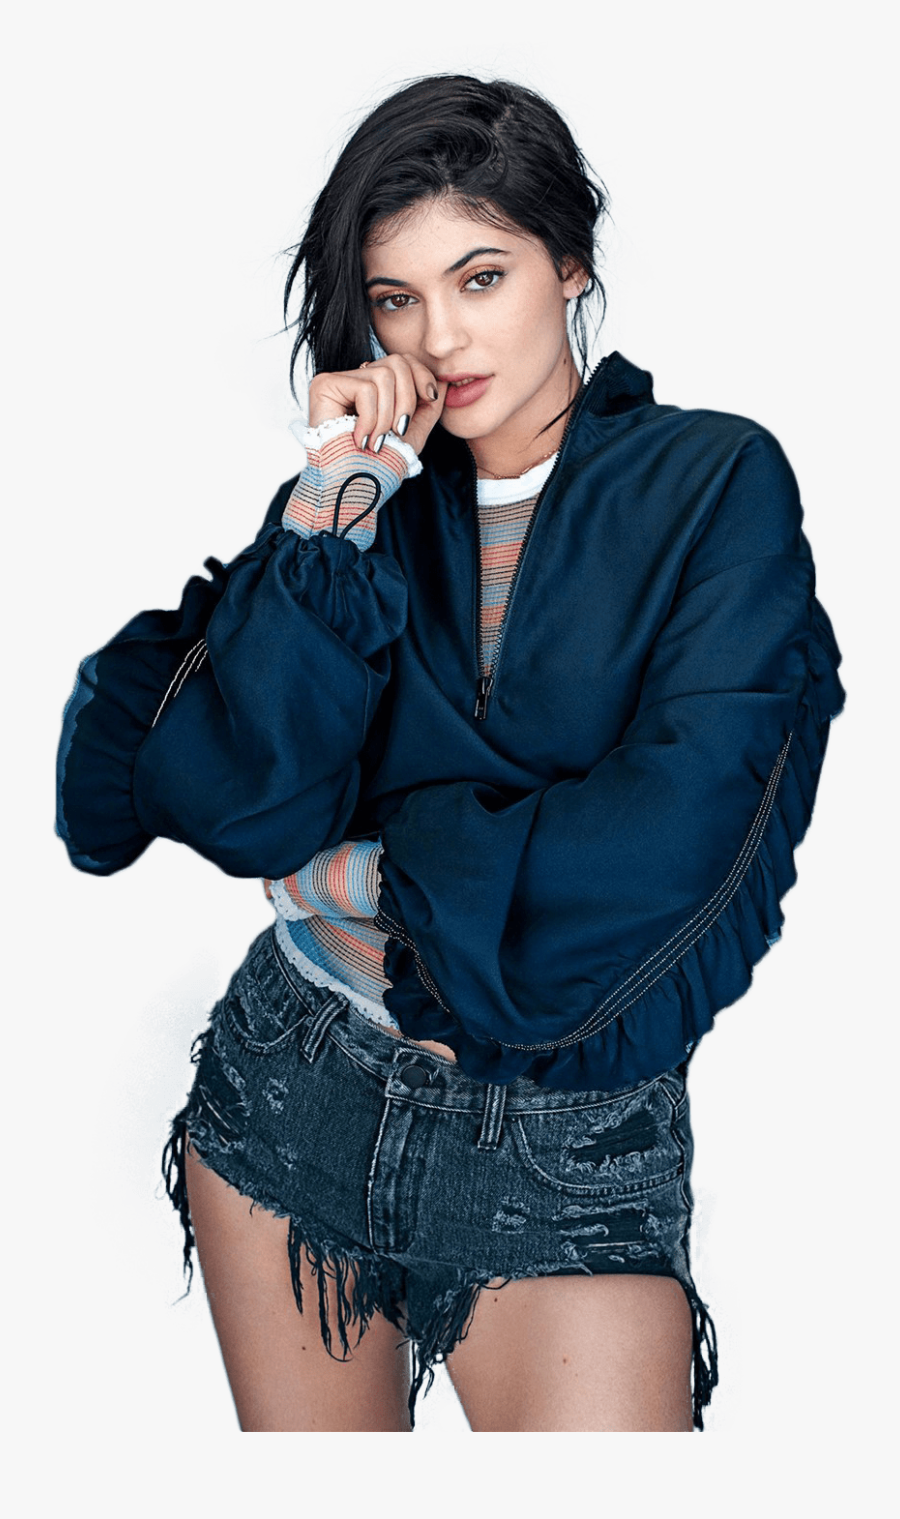 Kylie Jenner Blue Shirt Png Image - Kylie Jenner Png, Transparent Clipart